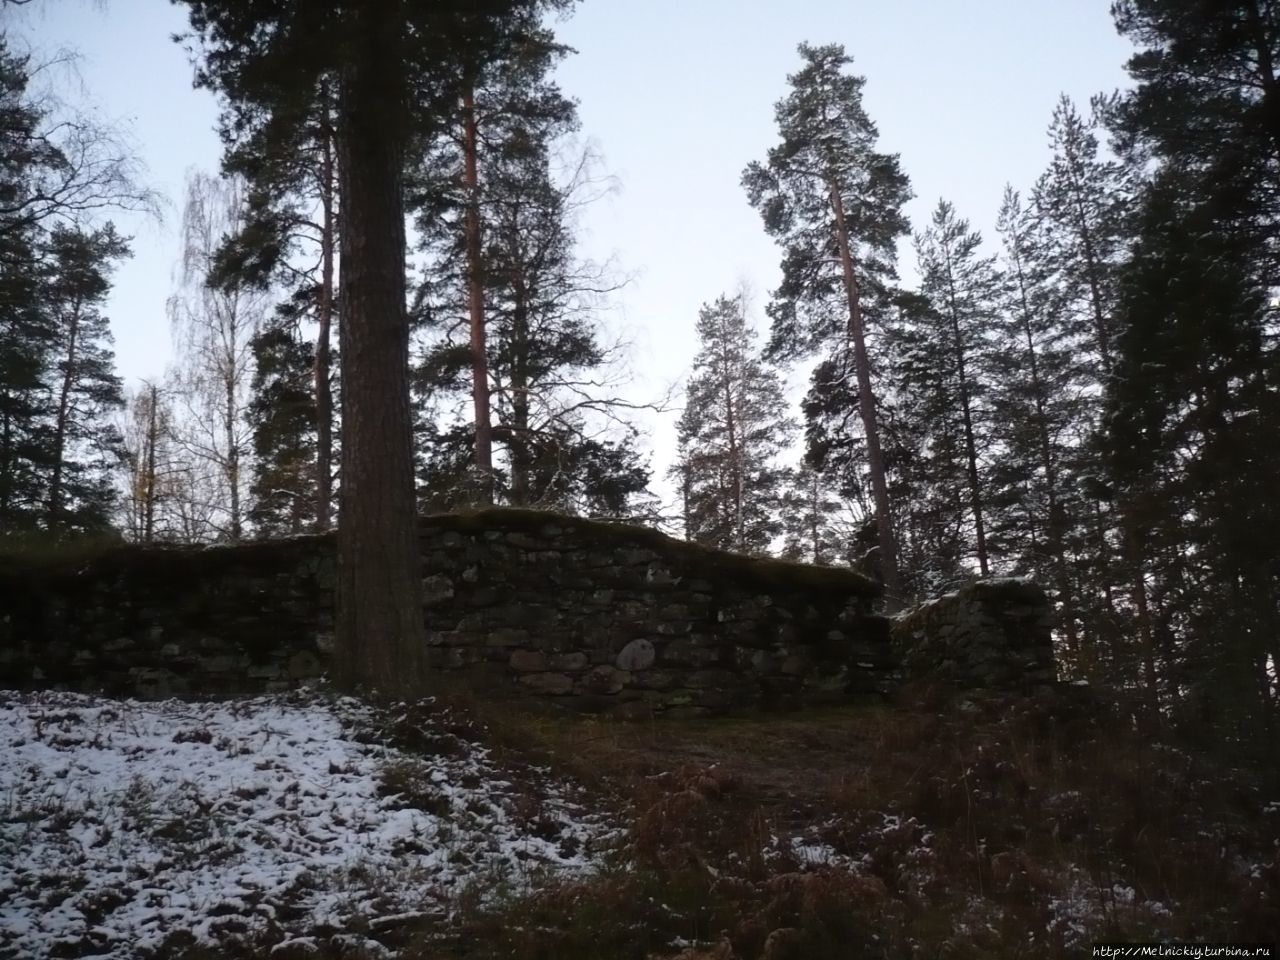 Замок Брахелинна Ристиина, Финляндия